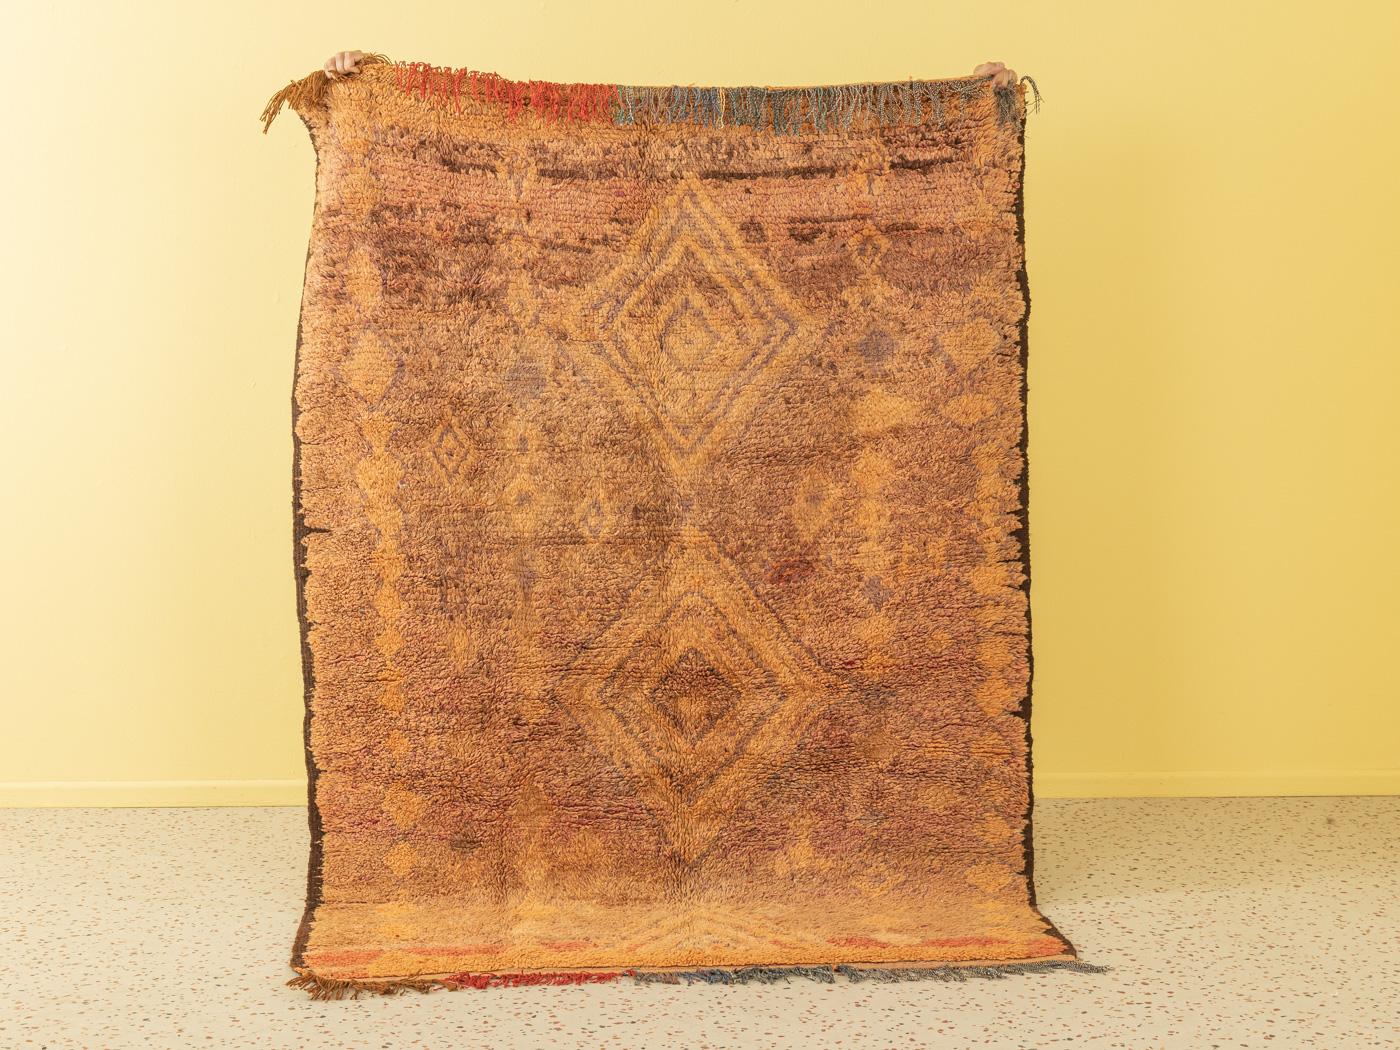 Dieser Vintage Rehamna ist ein Teppich aus 100 % Wolle - weich und angenehm zu tragen. Unsere Berberteppiche sind handgefertigt, ein Knoten nach dem anderen. Jeder unserer Berberteppiche ist ein langlebiges Einzelstück, das auf nachhaltige Weise aus